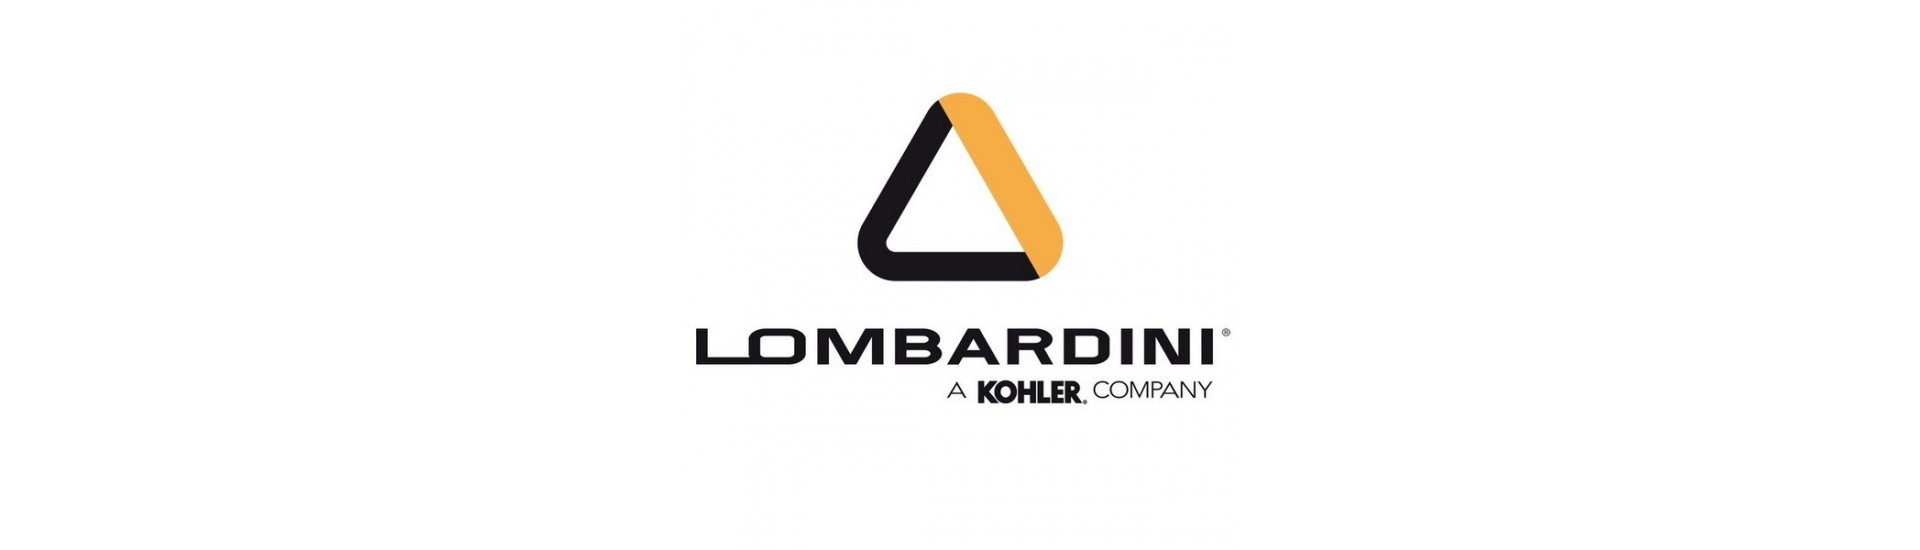 Parti motore Lombardini au meilleur prix pour voiture sans permis